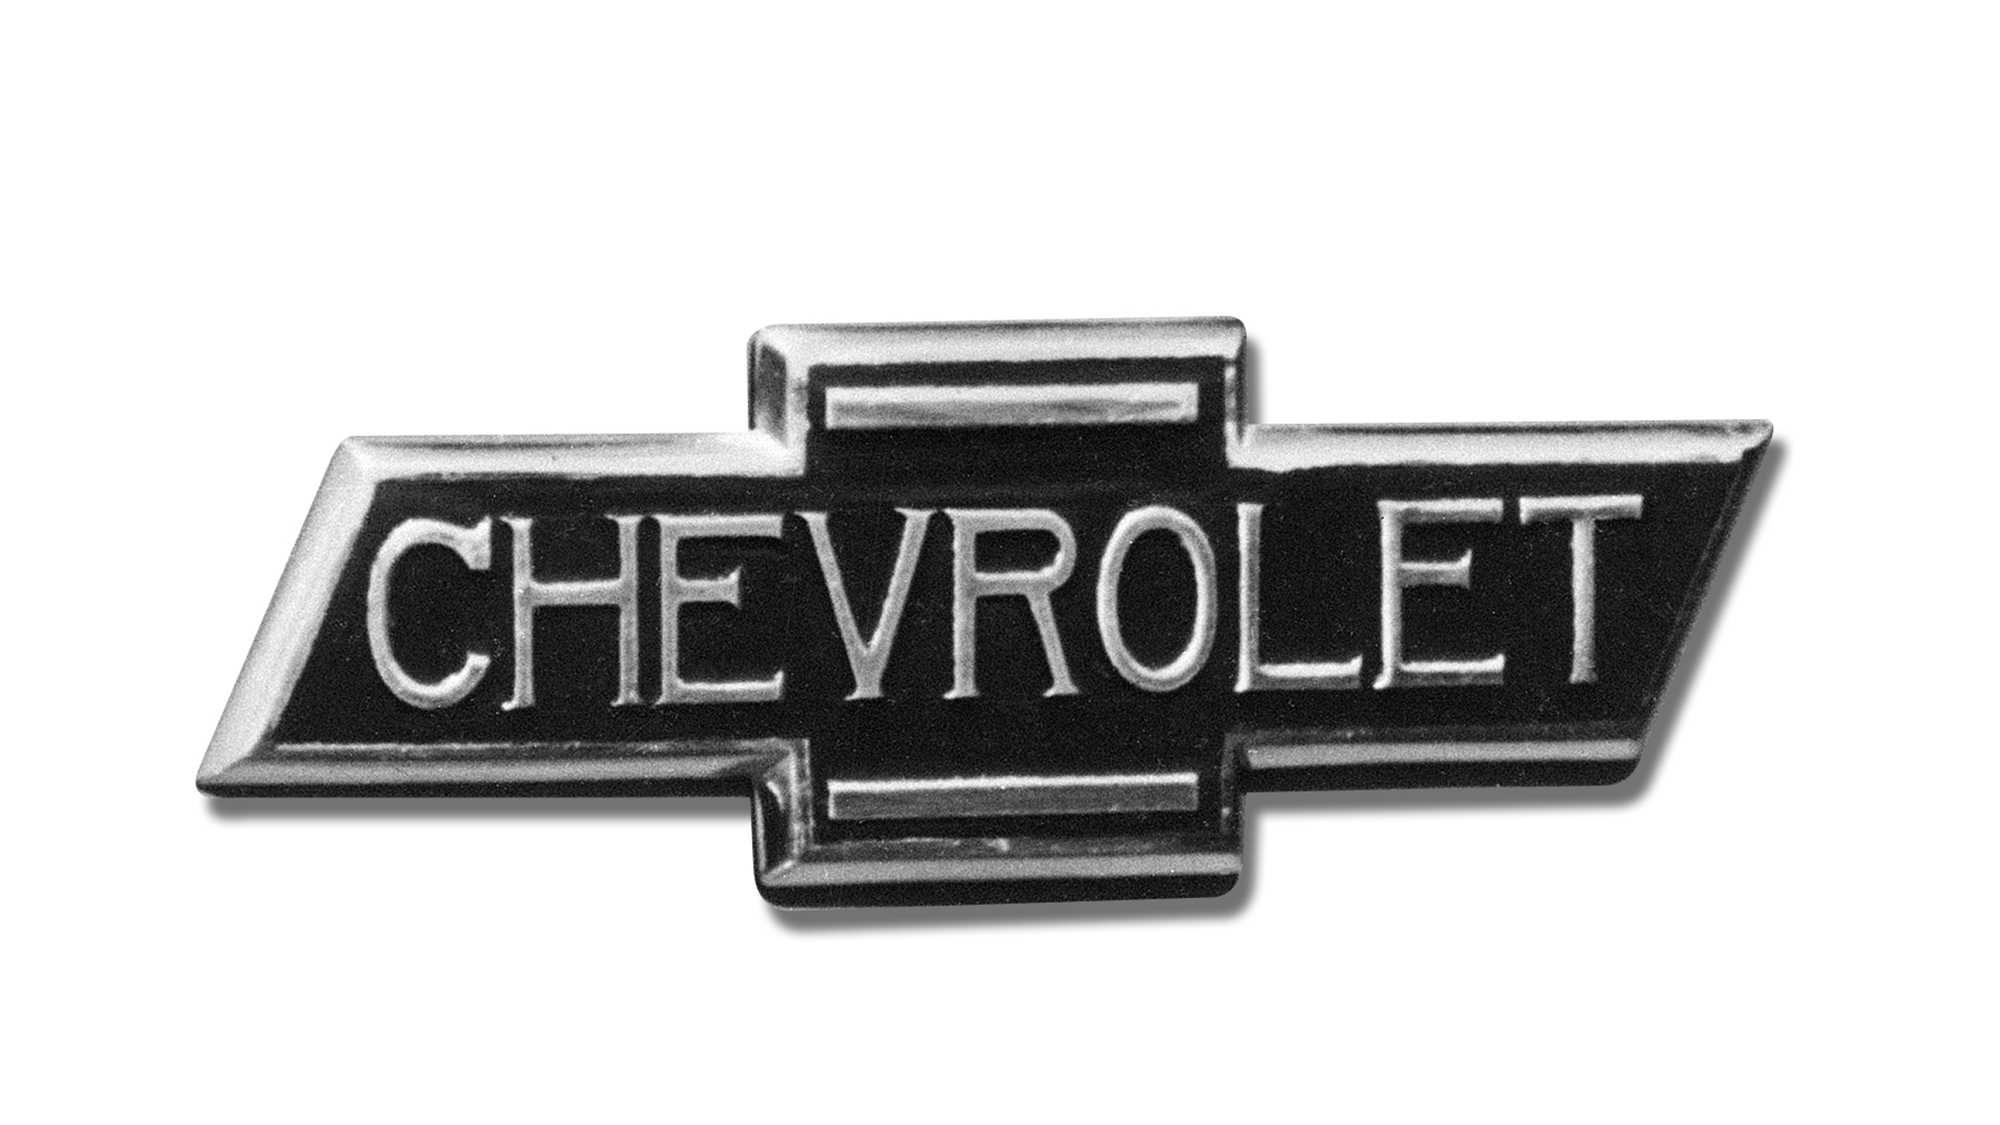 Chevrolet Bowtie turns 100